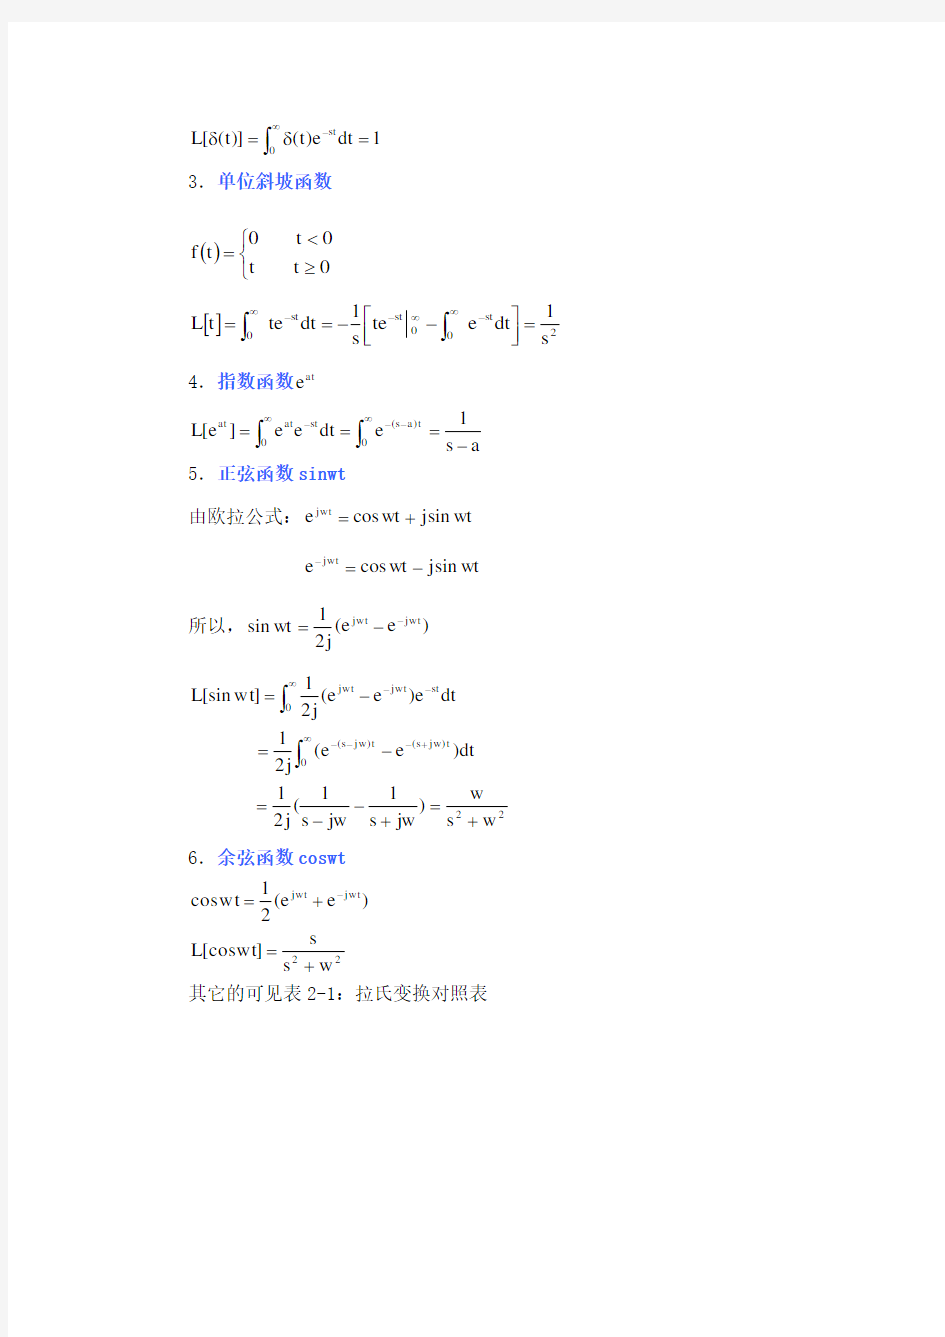 拉氏变换、传递函数、数学模型